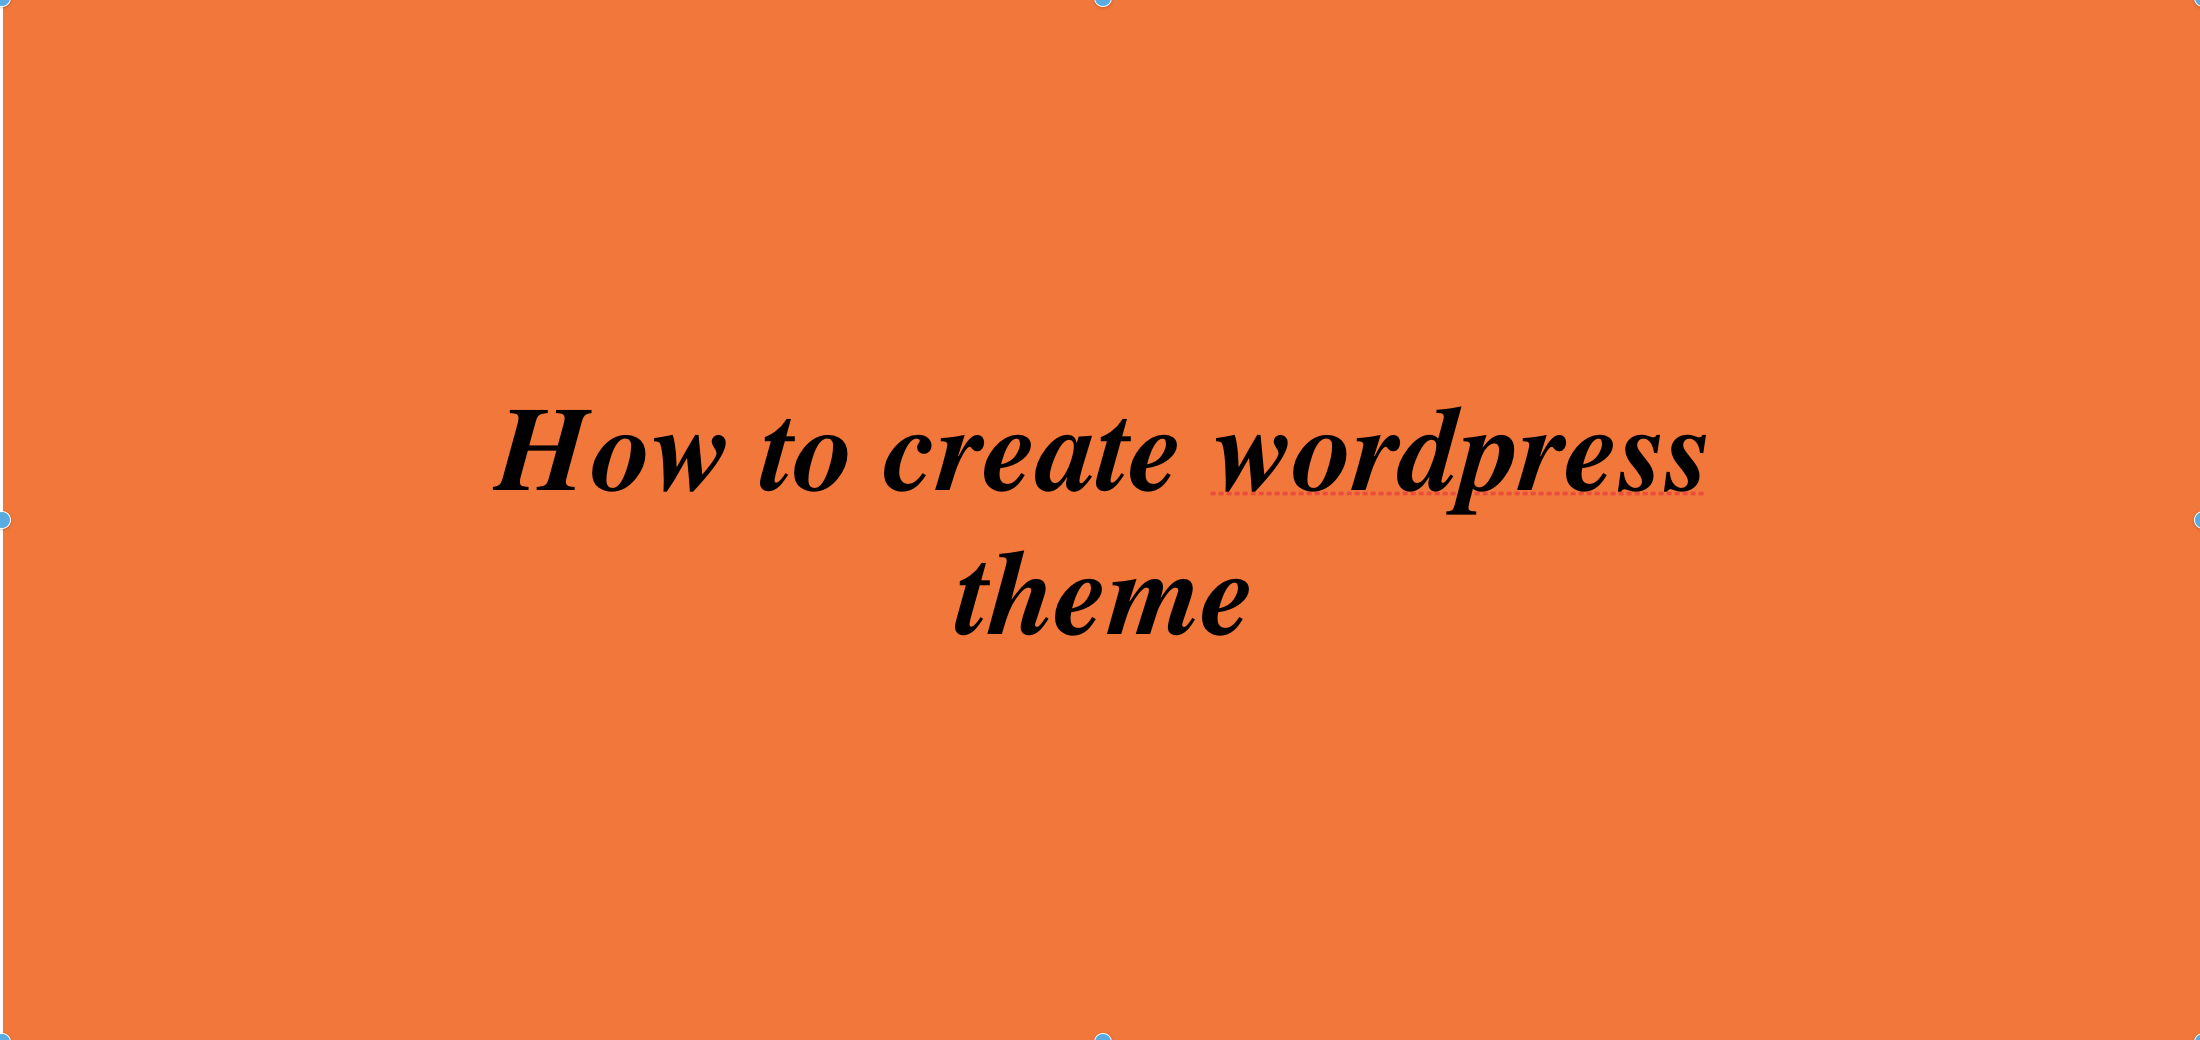 How to create wordpress theme